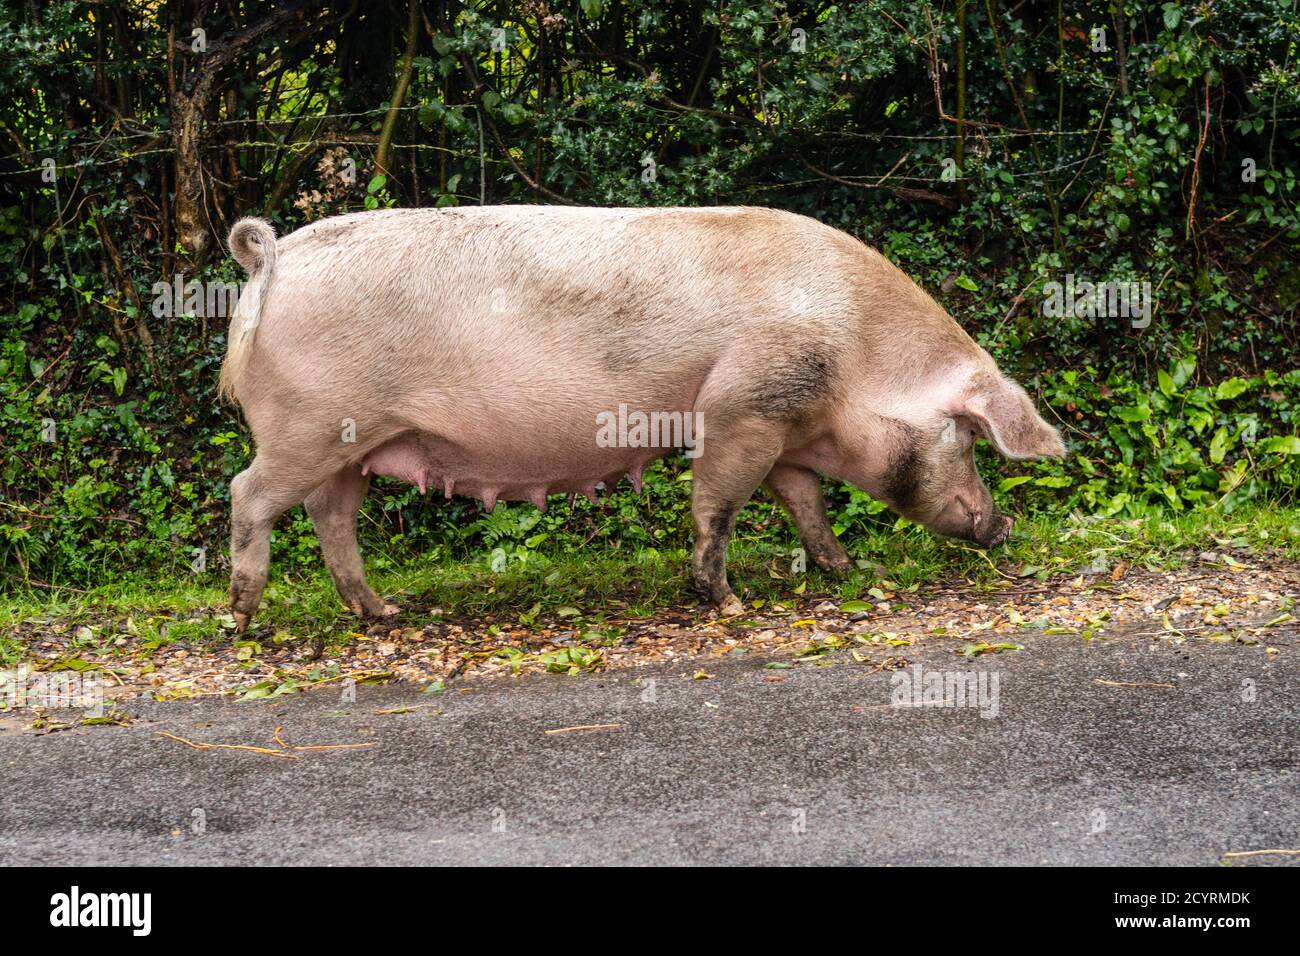 Schwein, in der Pannage-Saison freigesetzt, nach Nüssen und Insekten, Brook, New Forest, Hampshire, Großbritannien, Oktober. Stockfoto